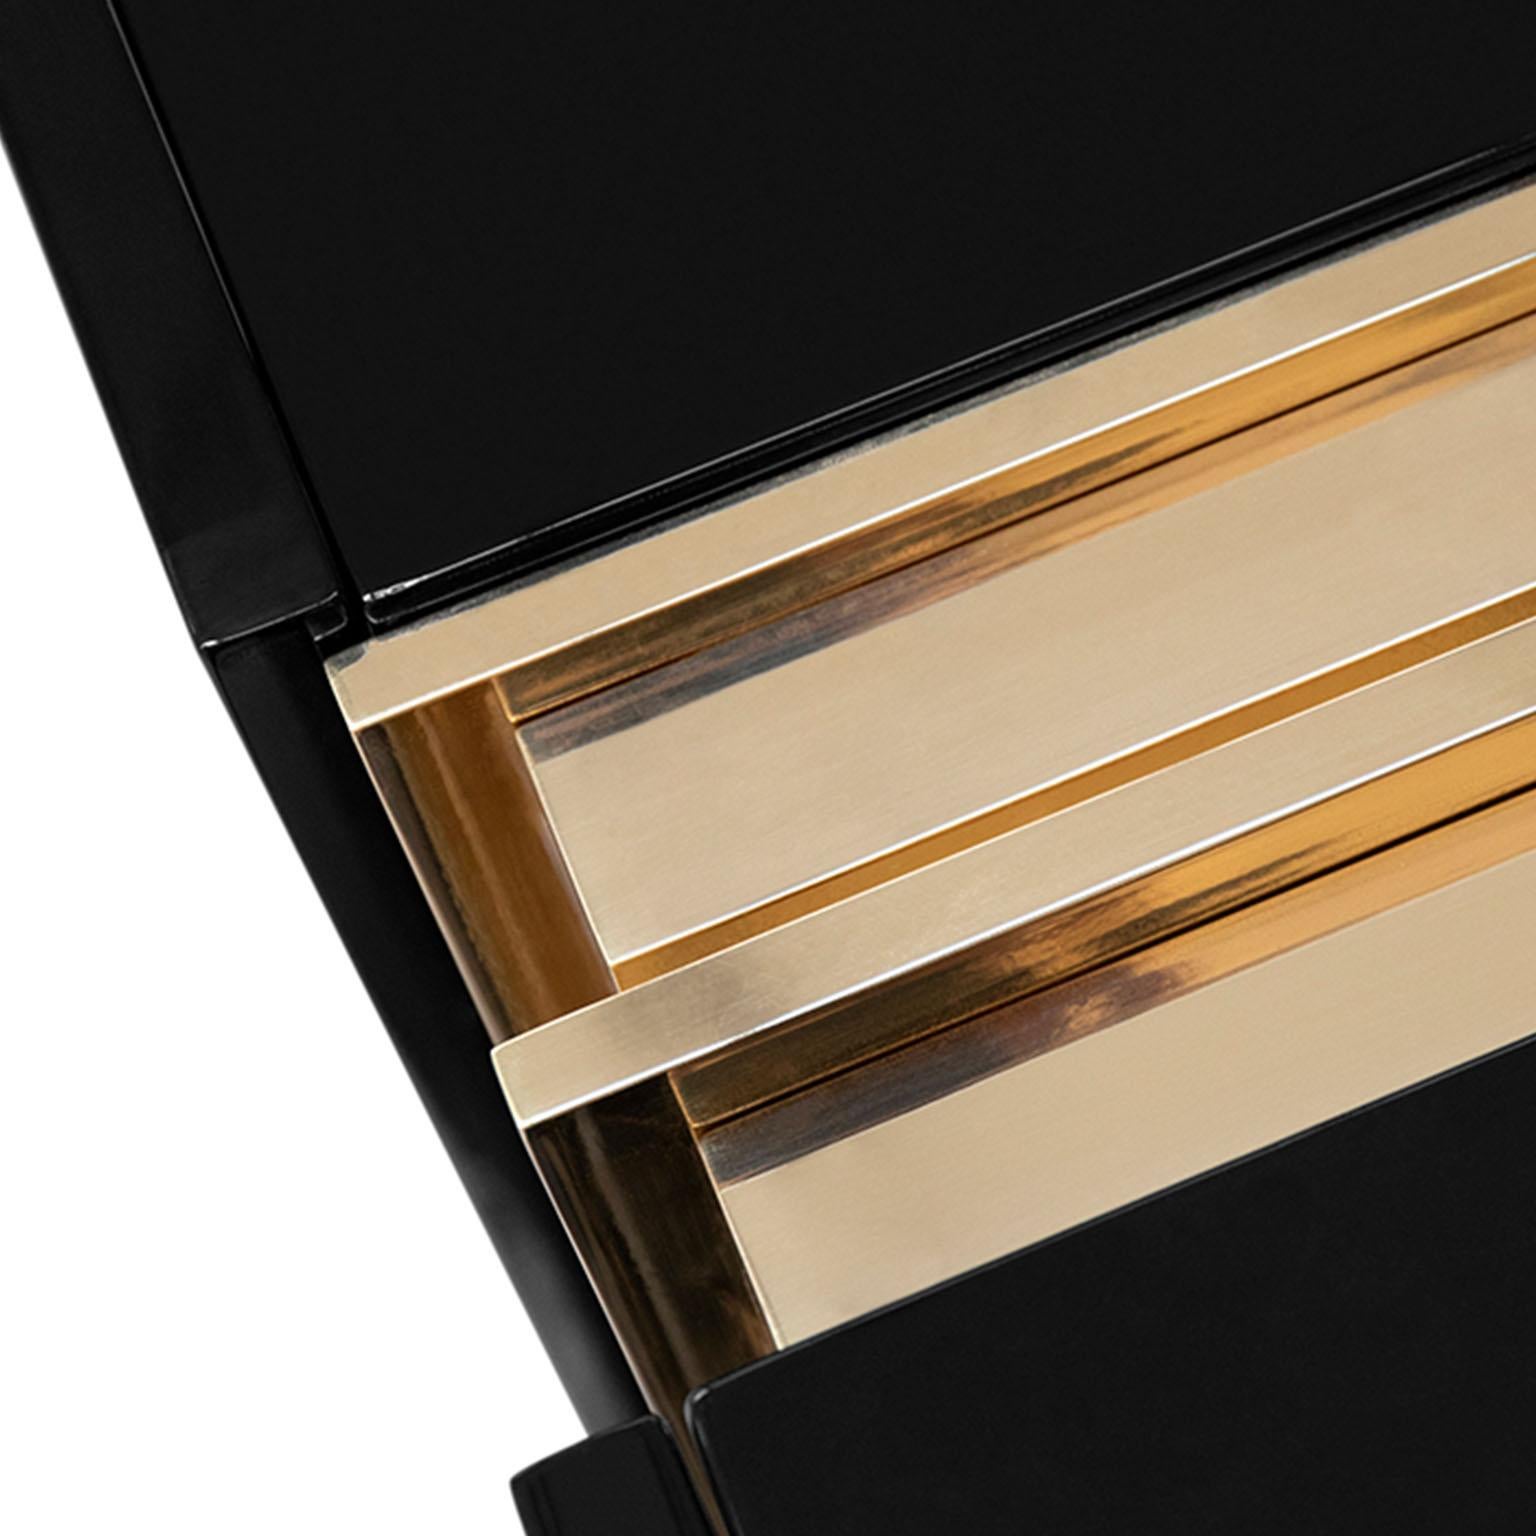 Die glatten und eleganten Formen dieses schwarzen Sideboards, das sehr stilvoll ist, bieten großzügigen Stauraum und verleihen jedem Raum eine attraktive Ausstrahlung. Die asymmetrischen Stäbe aus vergoldetem Messing verleihen dieser Spanplatte mit